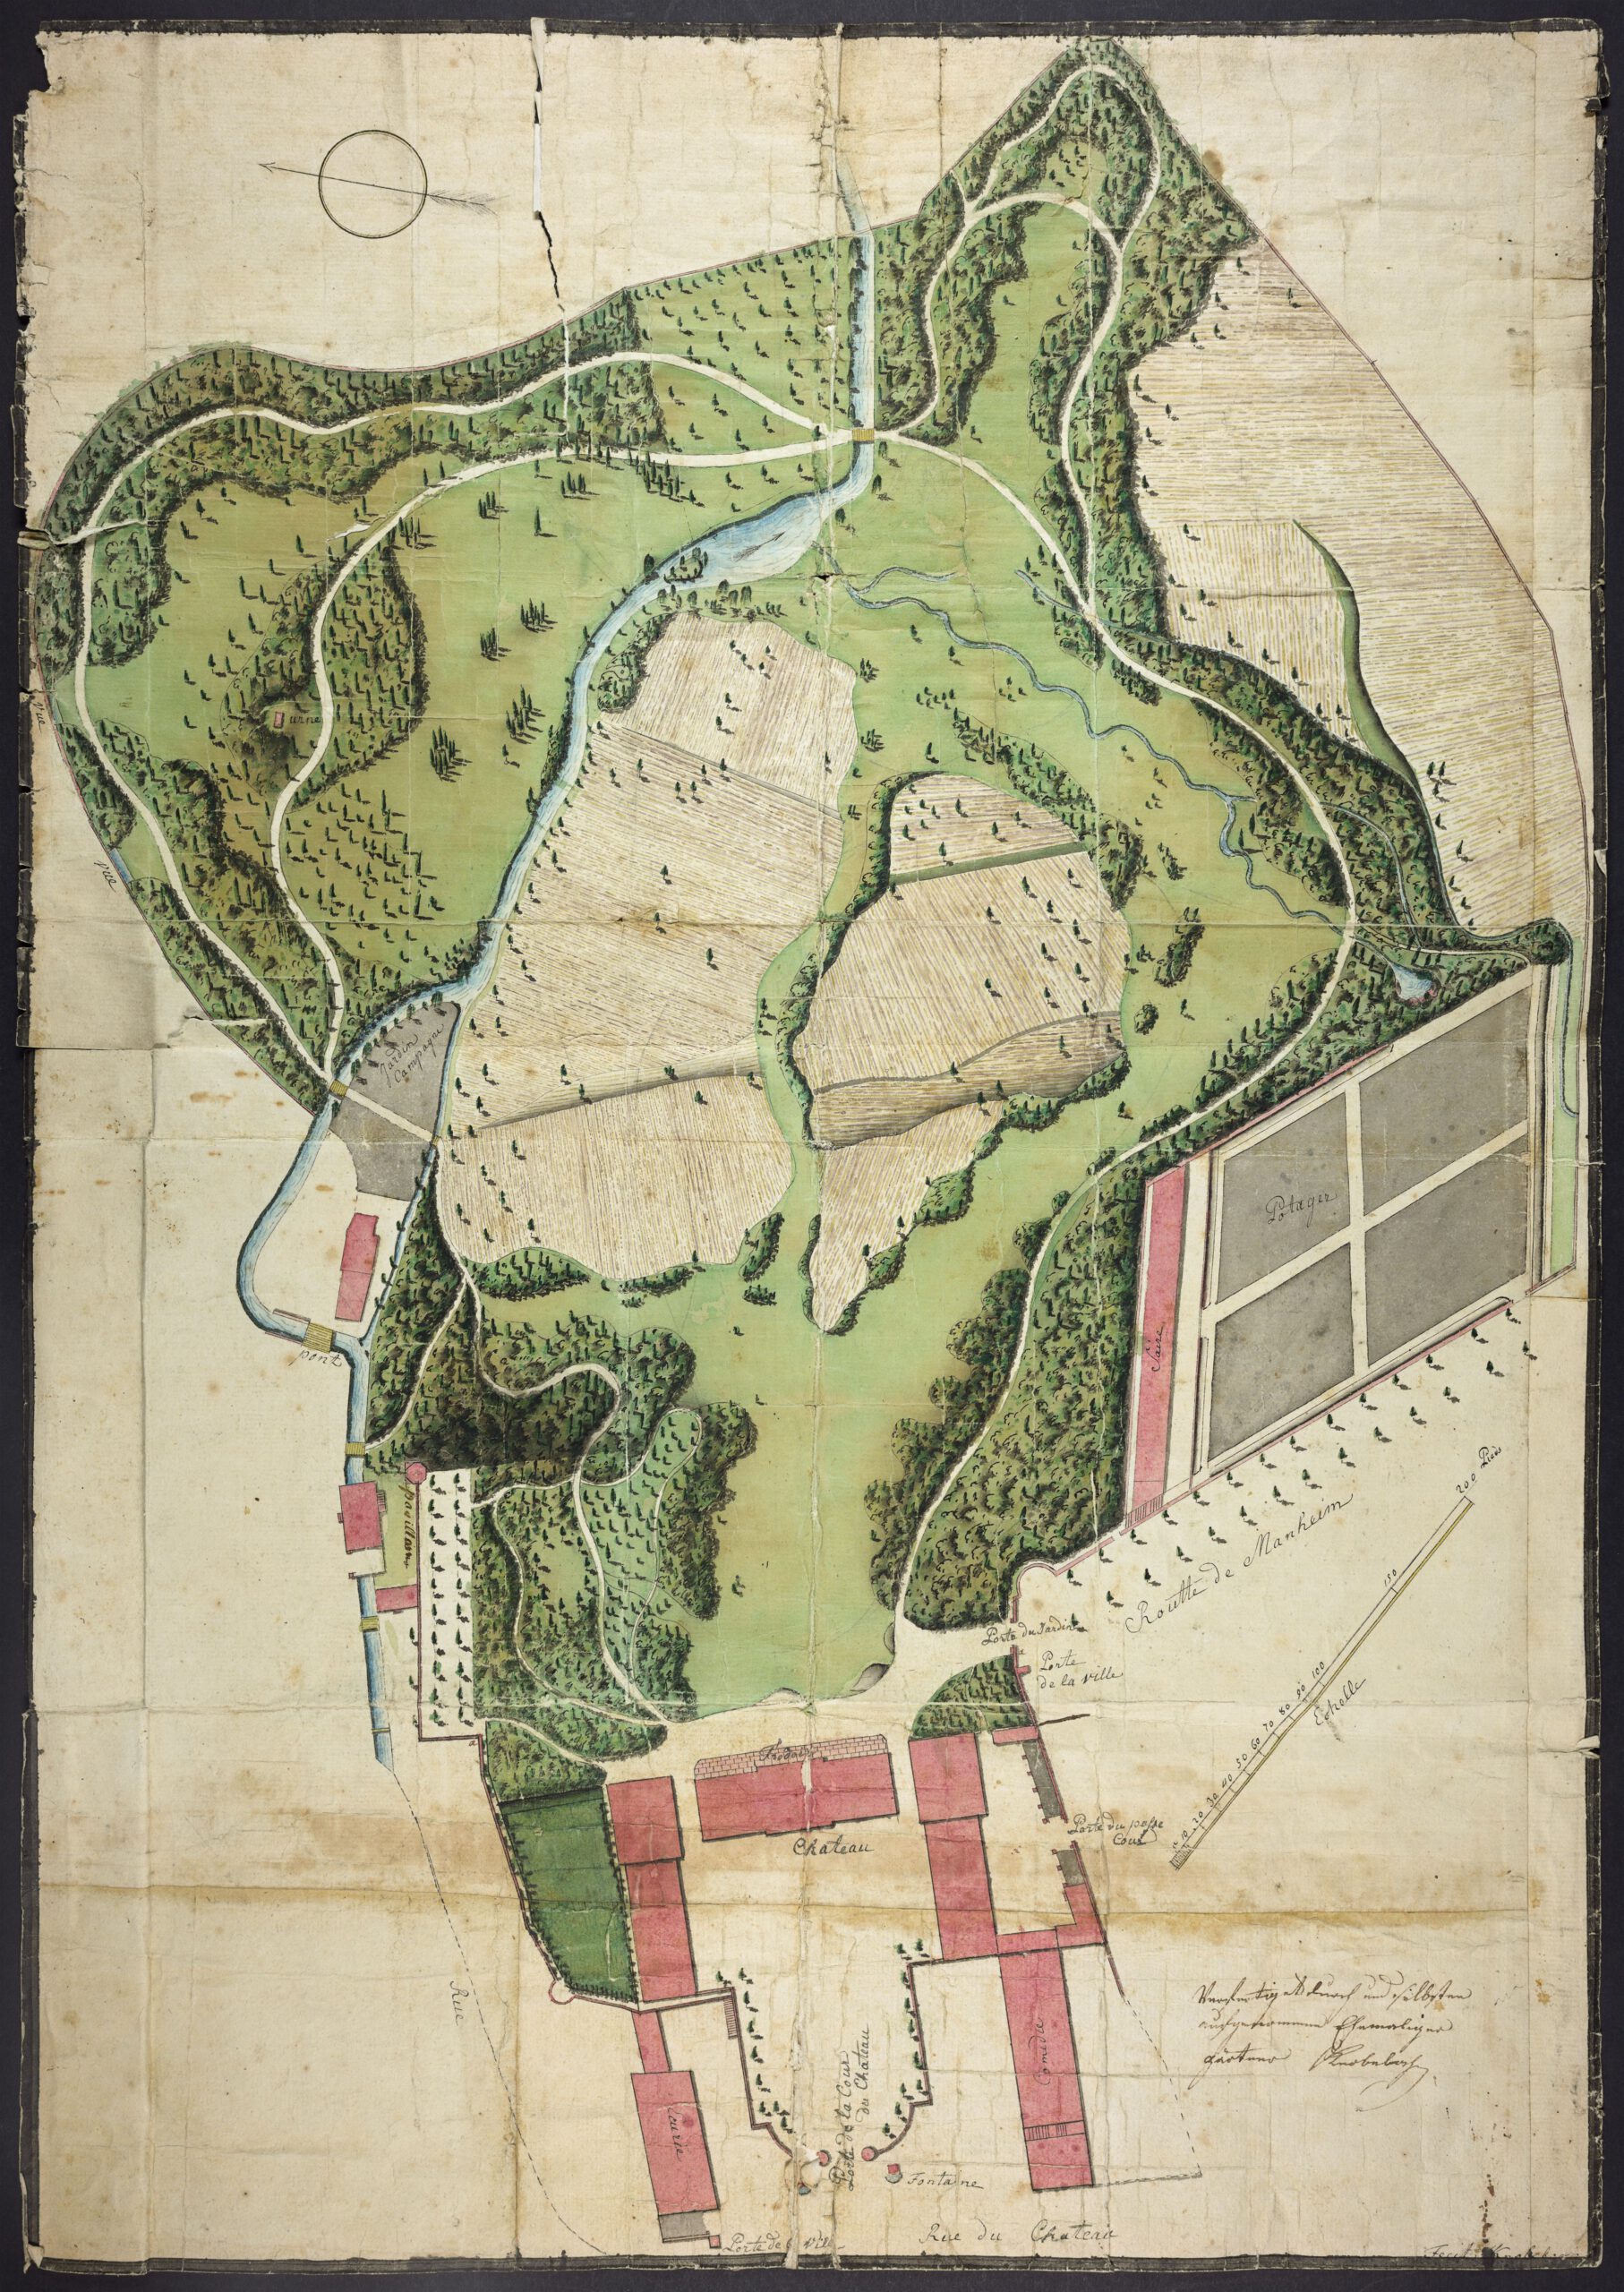 Bad Dürkheim, Fürstlich-Leiningen’sches Schloss und Garten, Plan von Hofgärtner Knobeloch, um 1793 (Landesarchiv Speyer, Best. W 1 Nr. 2863)